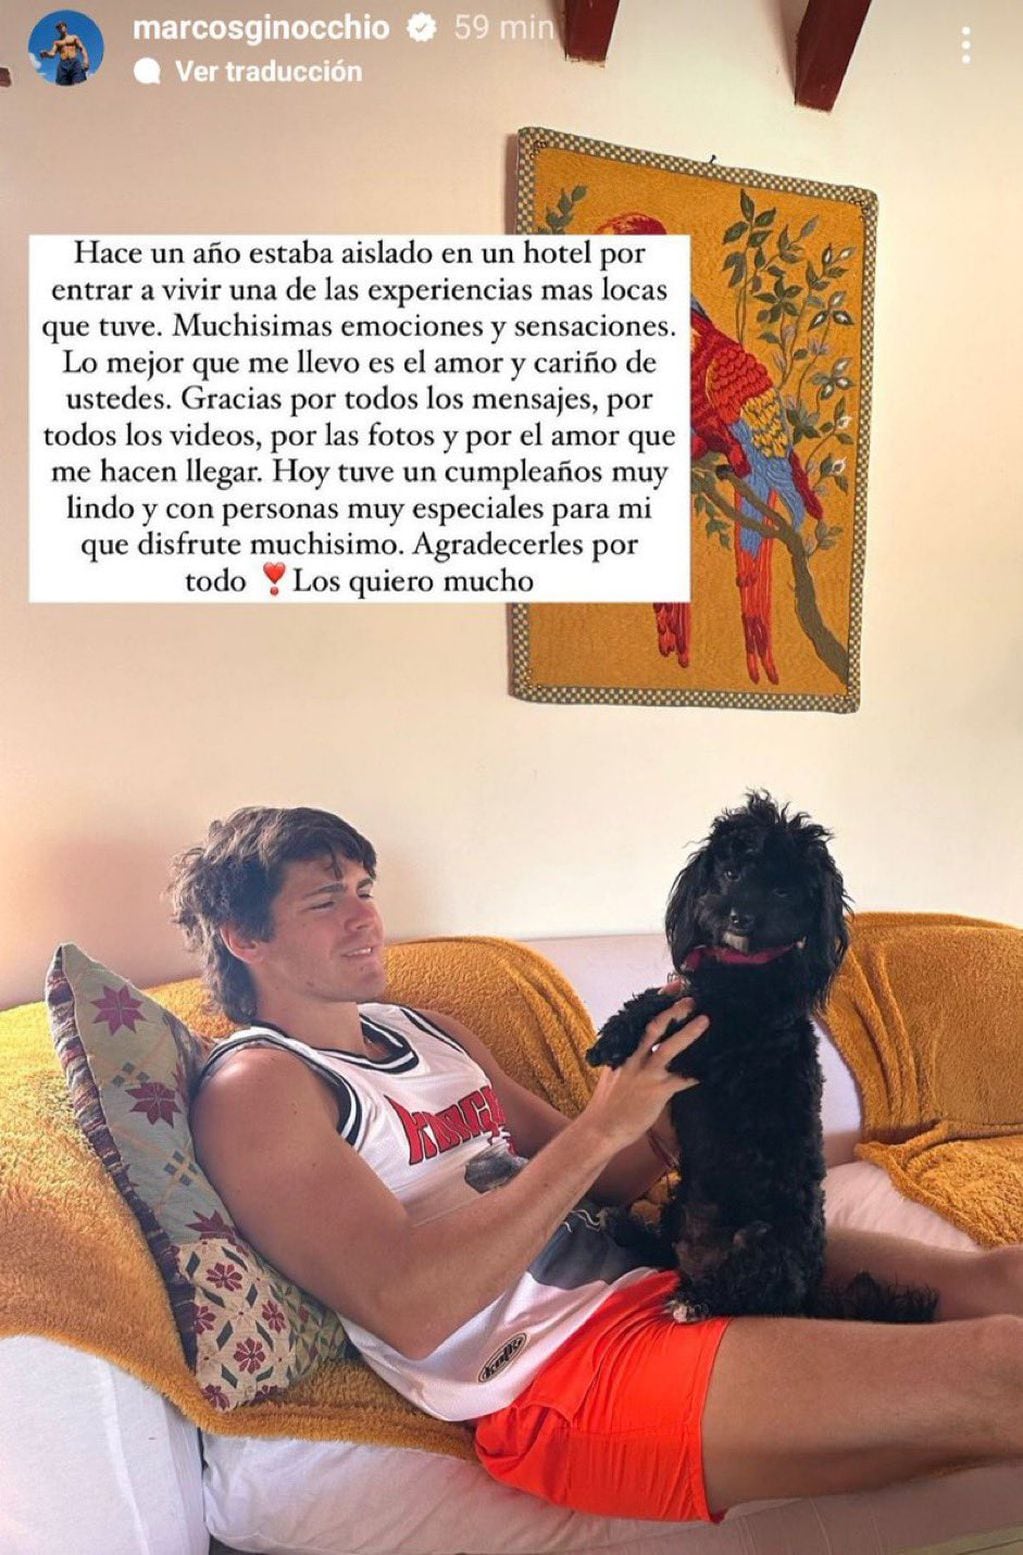 El mensaje de Marcos Ginocchio en Instagram